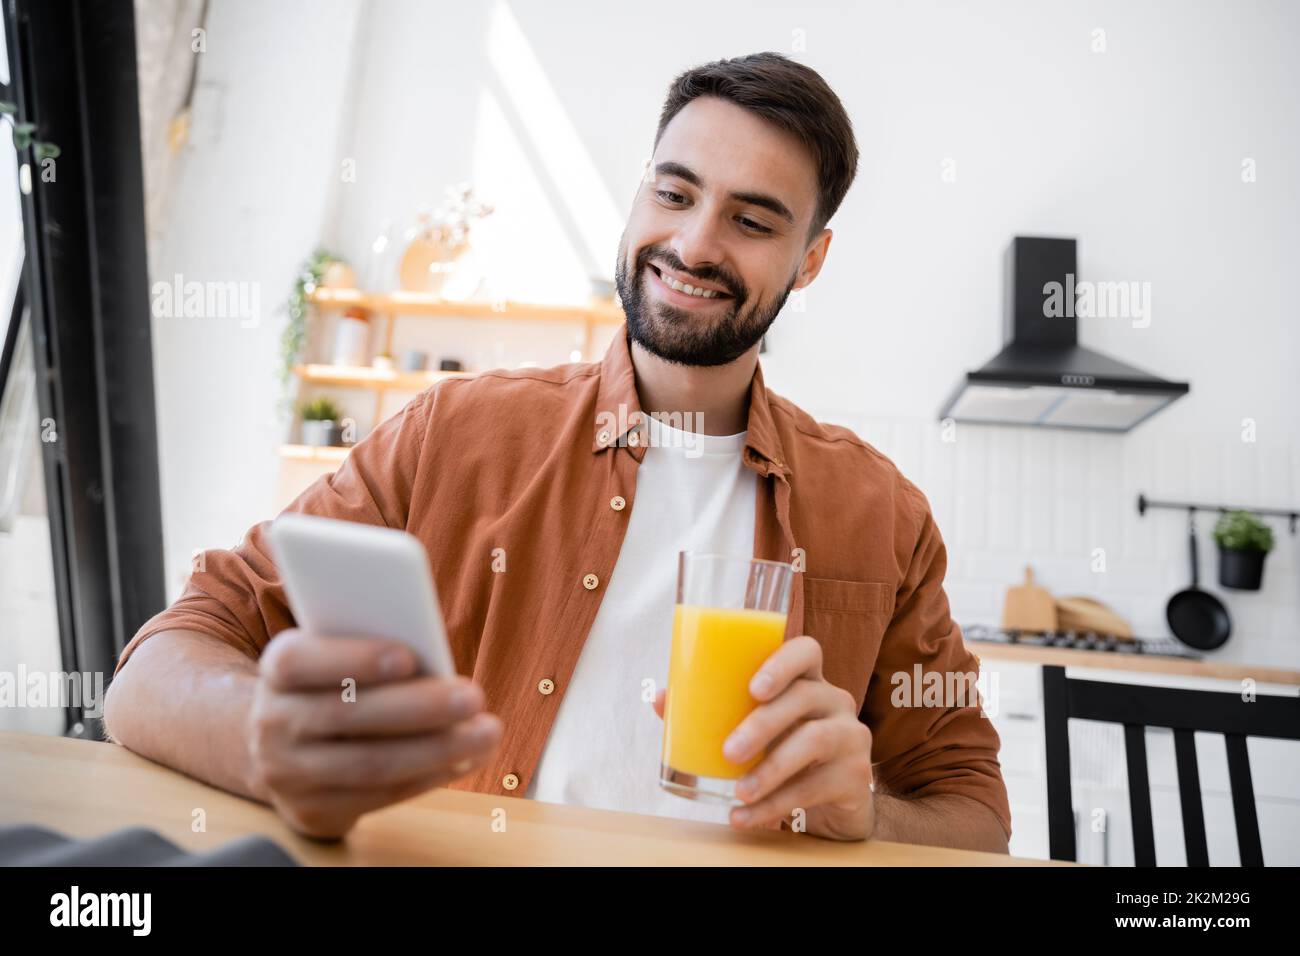 hombre alegre y barbudo sosteniendo un vaso de zumo de naranja mientras utilizaba un smartphone, imagen de archivo Foto de stock